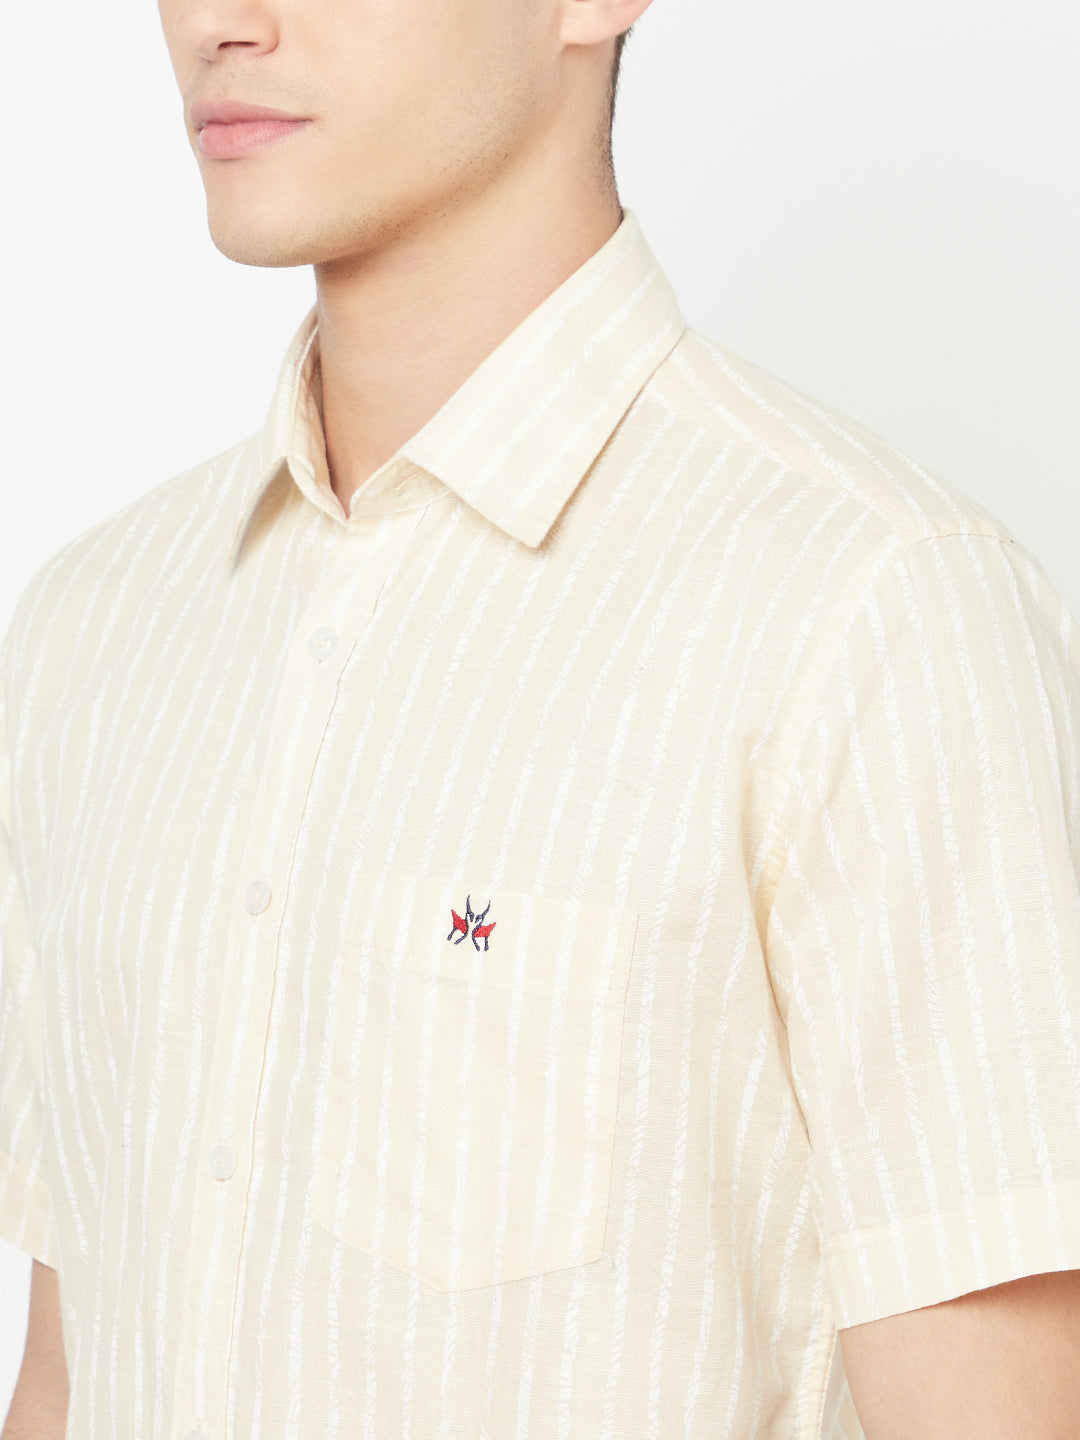 Cream Striped Linen Shirt - Men Shirts